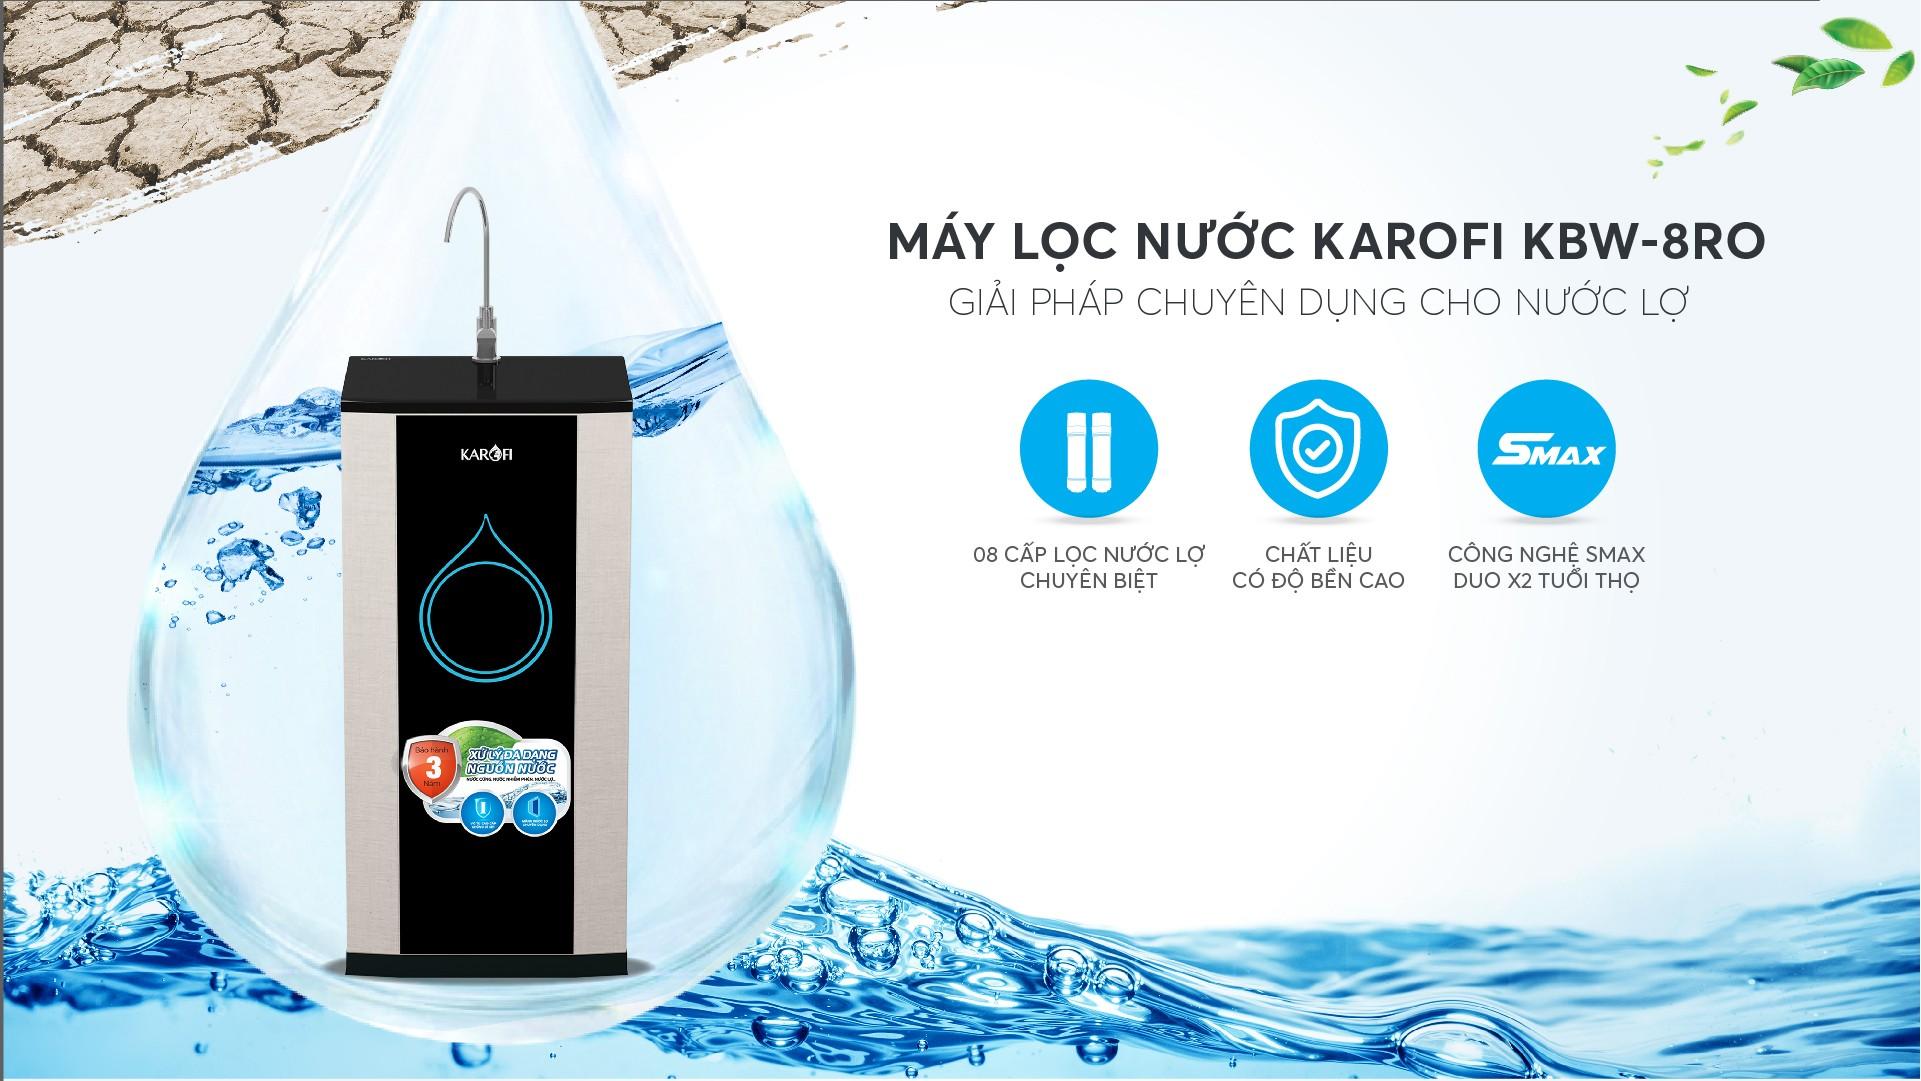 Máy lọc nước Karofi KBW-8RO - Xử lý nước lợ